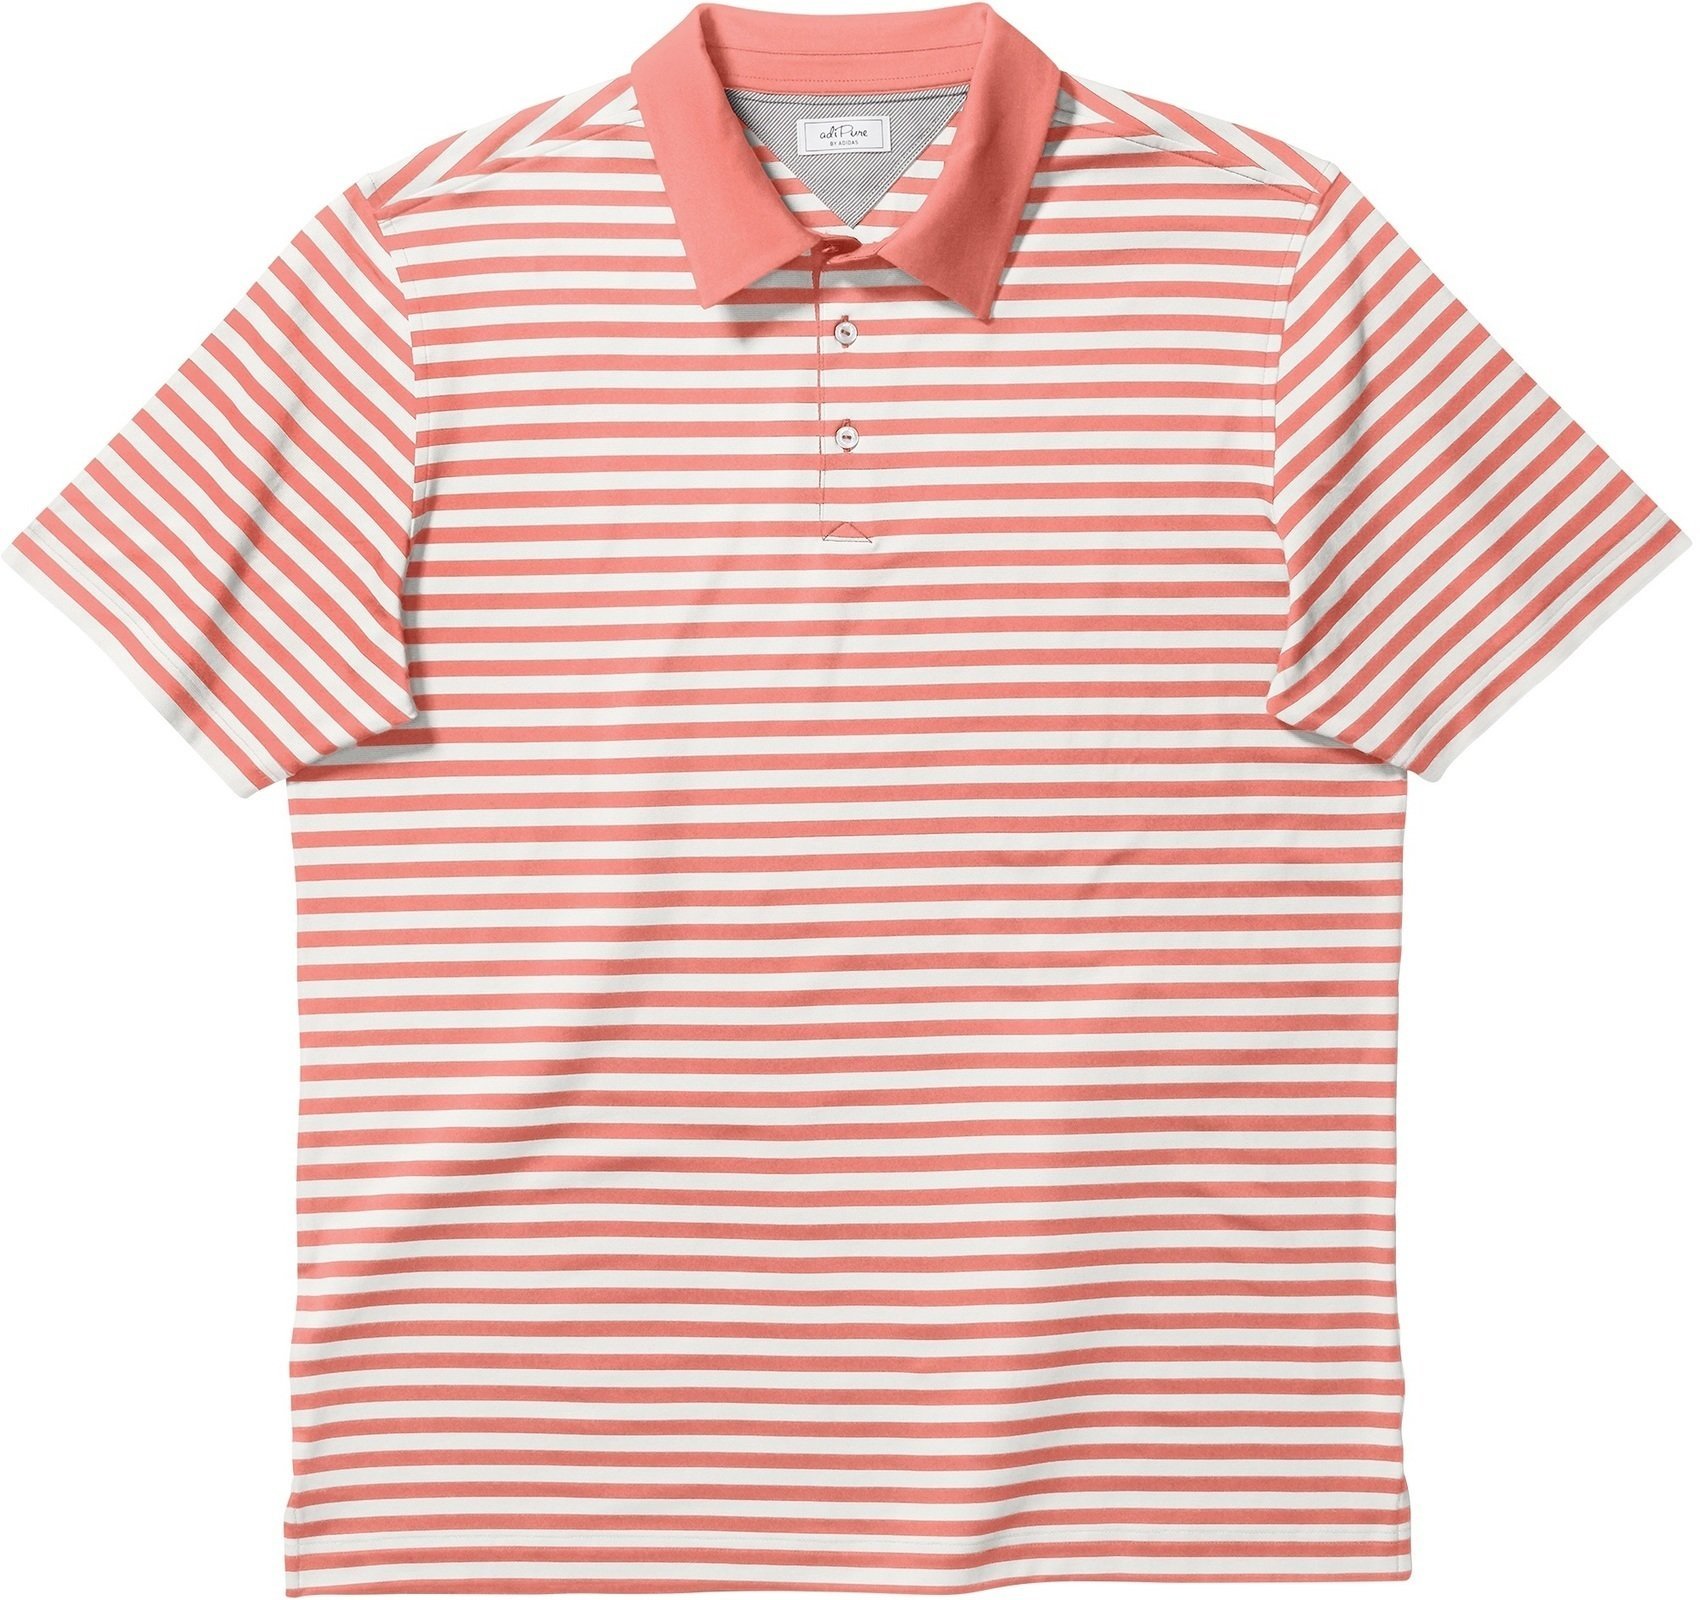 Camiseta polo Adidas Adipure Premium Bold Stripe Sun Glow S